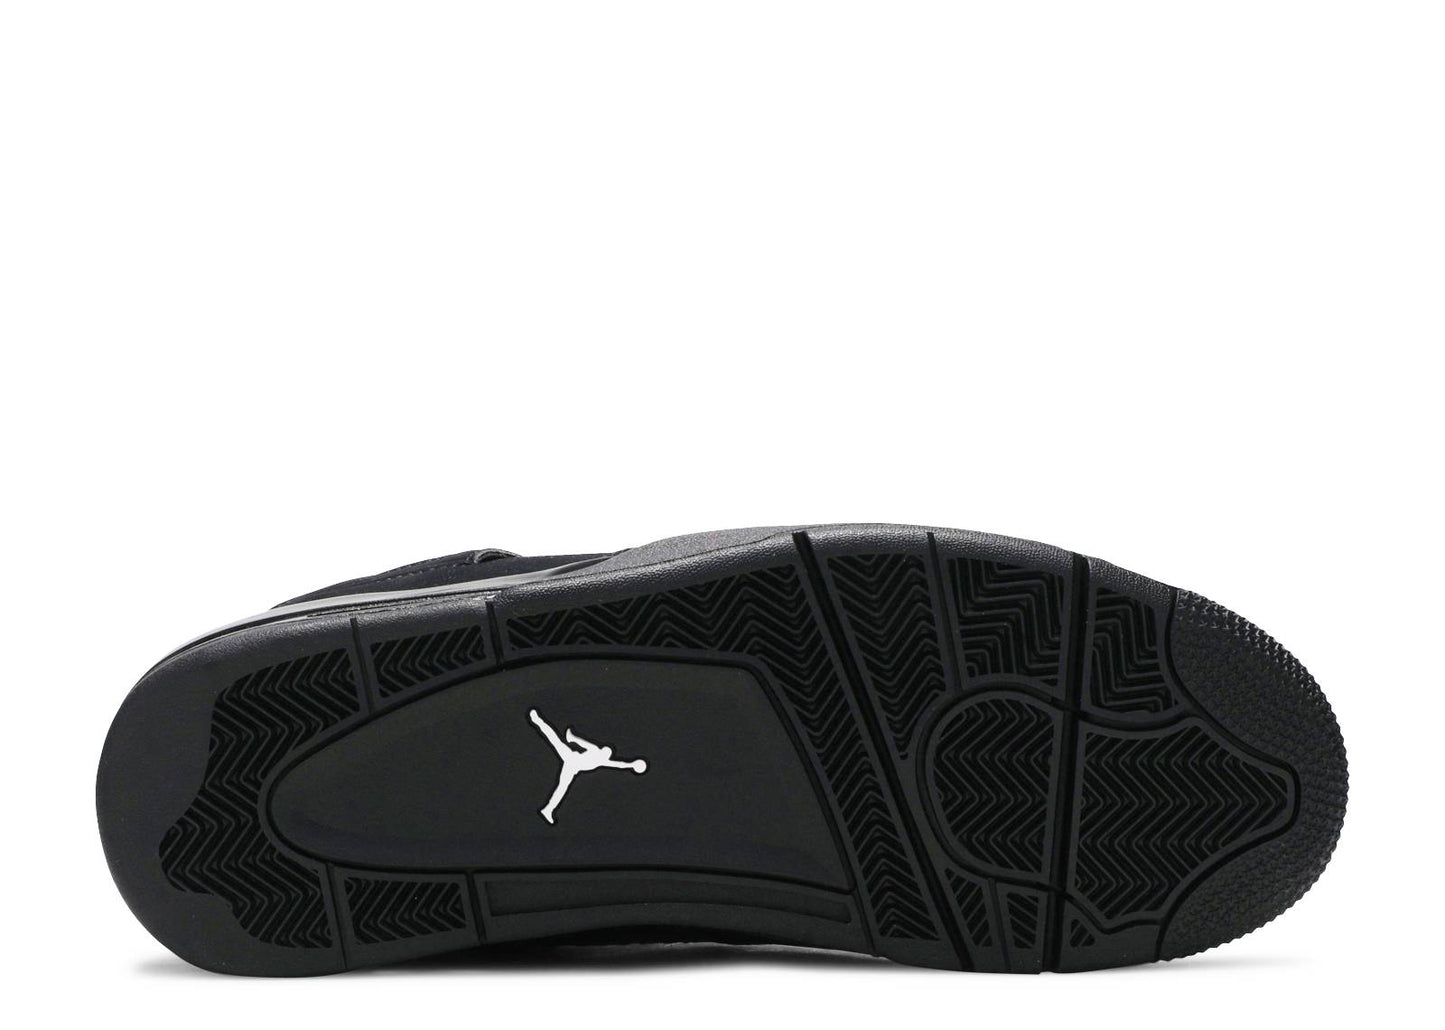 Air Jordan 4 Retro "Black Cat 2020"